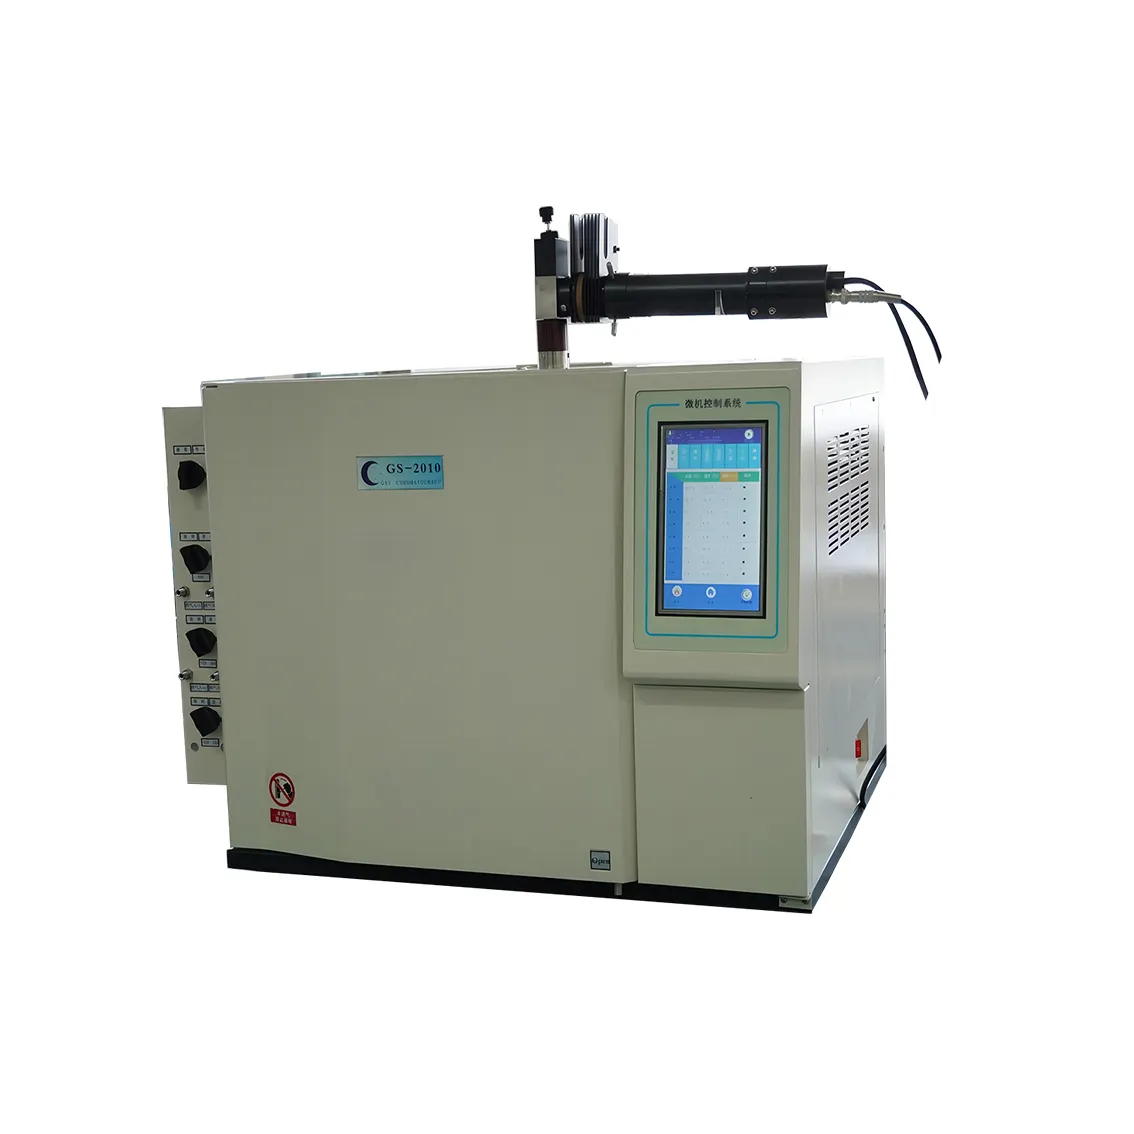 جهاز تصوير الكروماتوجراف GS-2010S للغاز الطبيعي المسال بتصميم FPD لتحليل الكبريتيدات والغاز